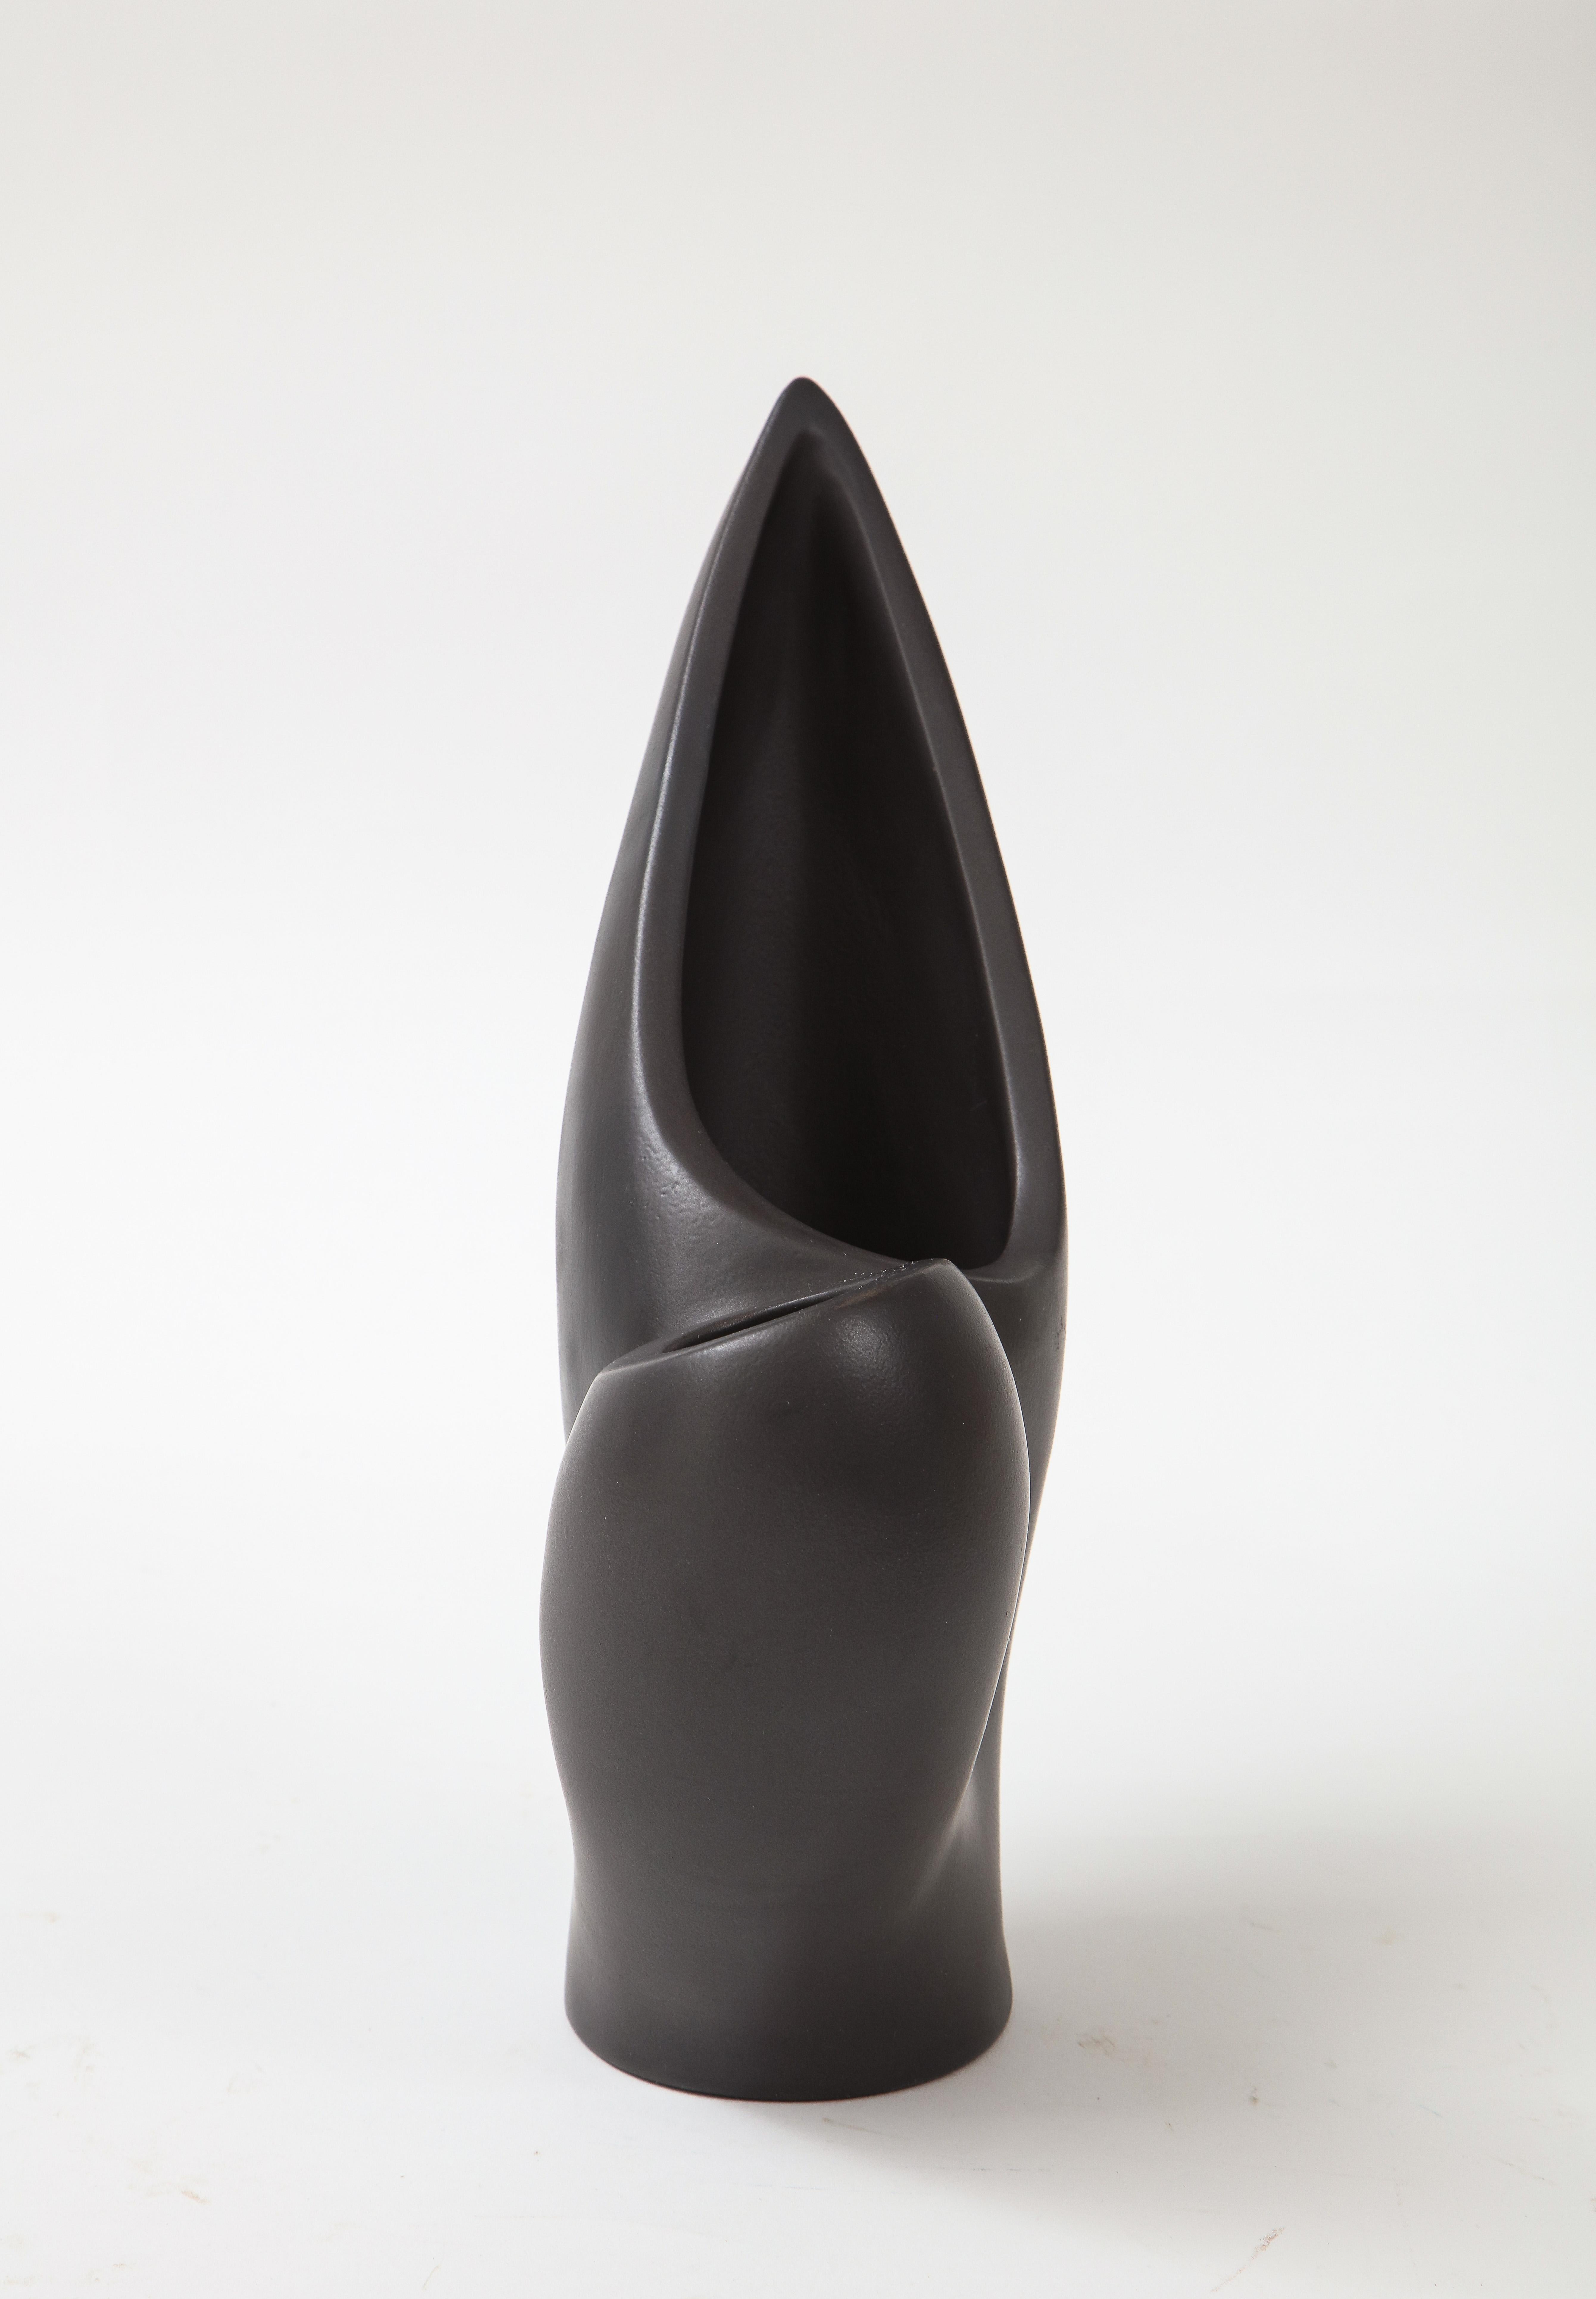 Marcel Giraud Black Asymmetrical Vase, Vallauris, France, c. 1950, Signed 5